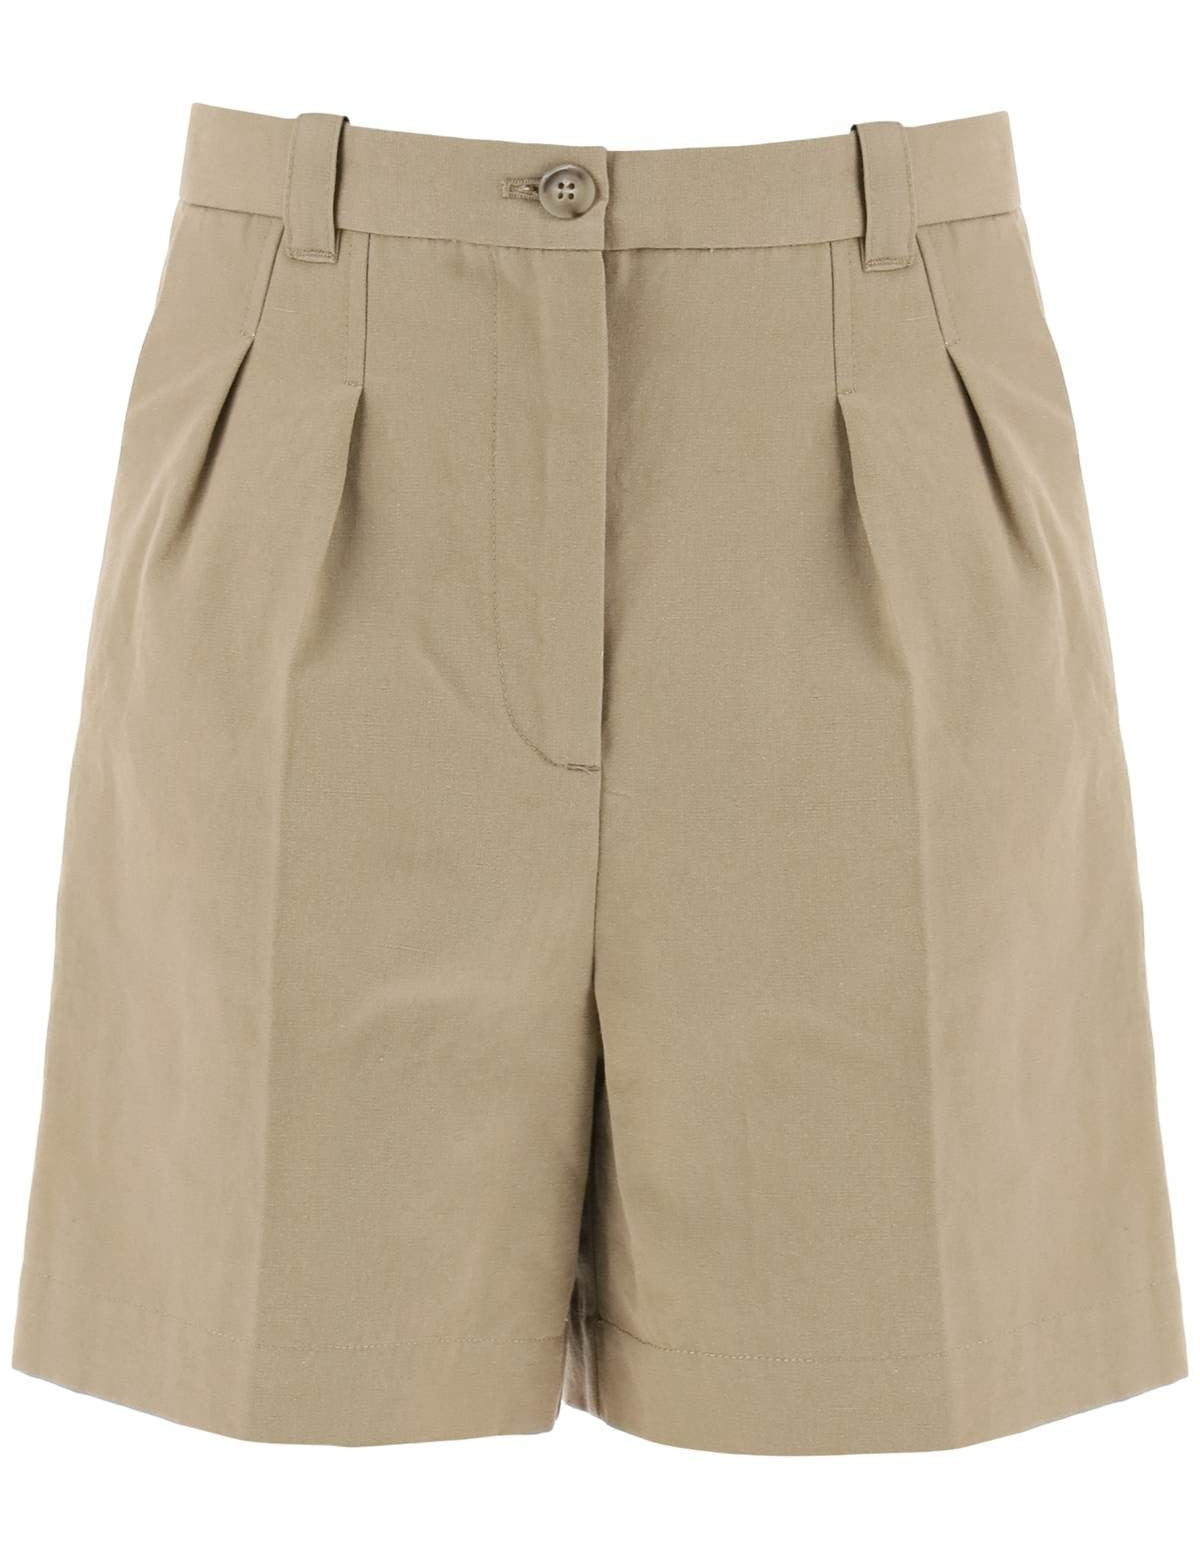 apc-cotton-and-linen-nola-shorts-for.jpg